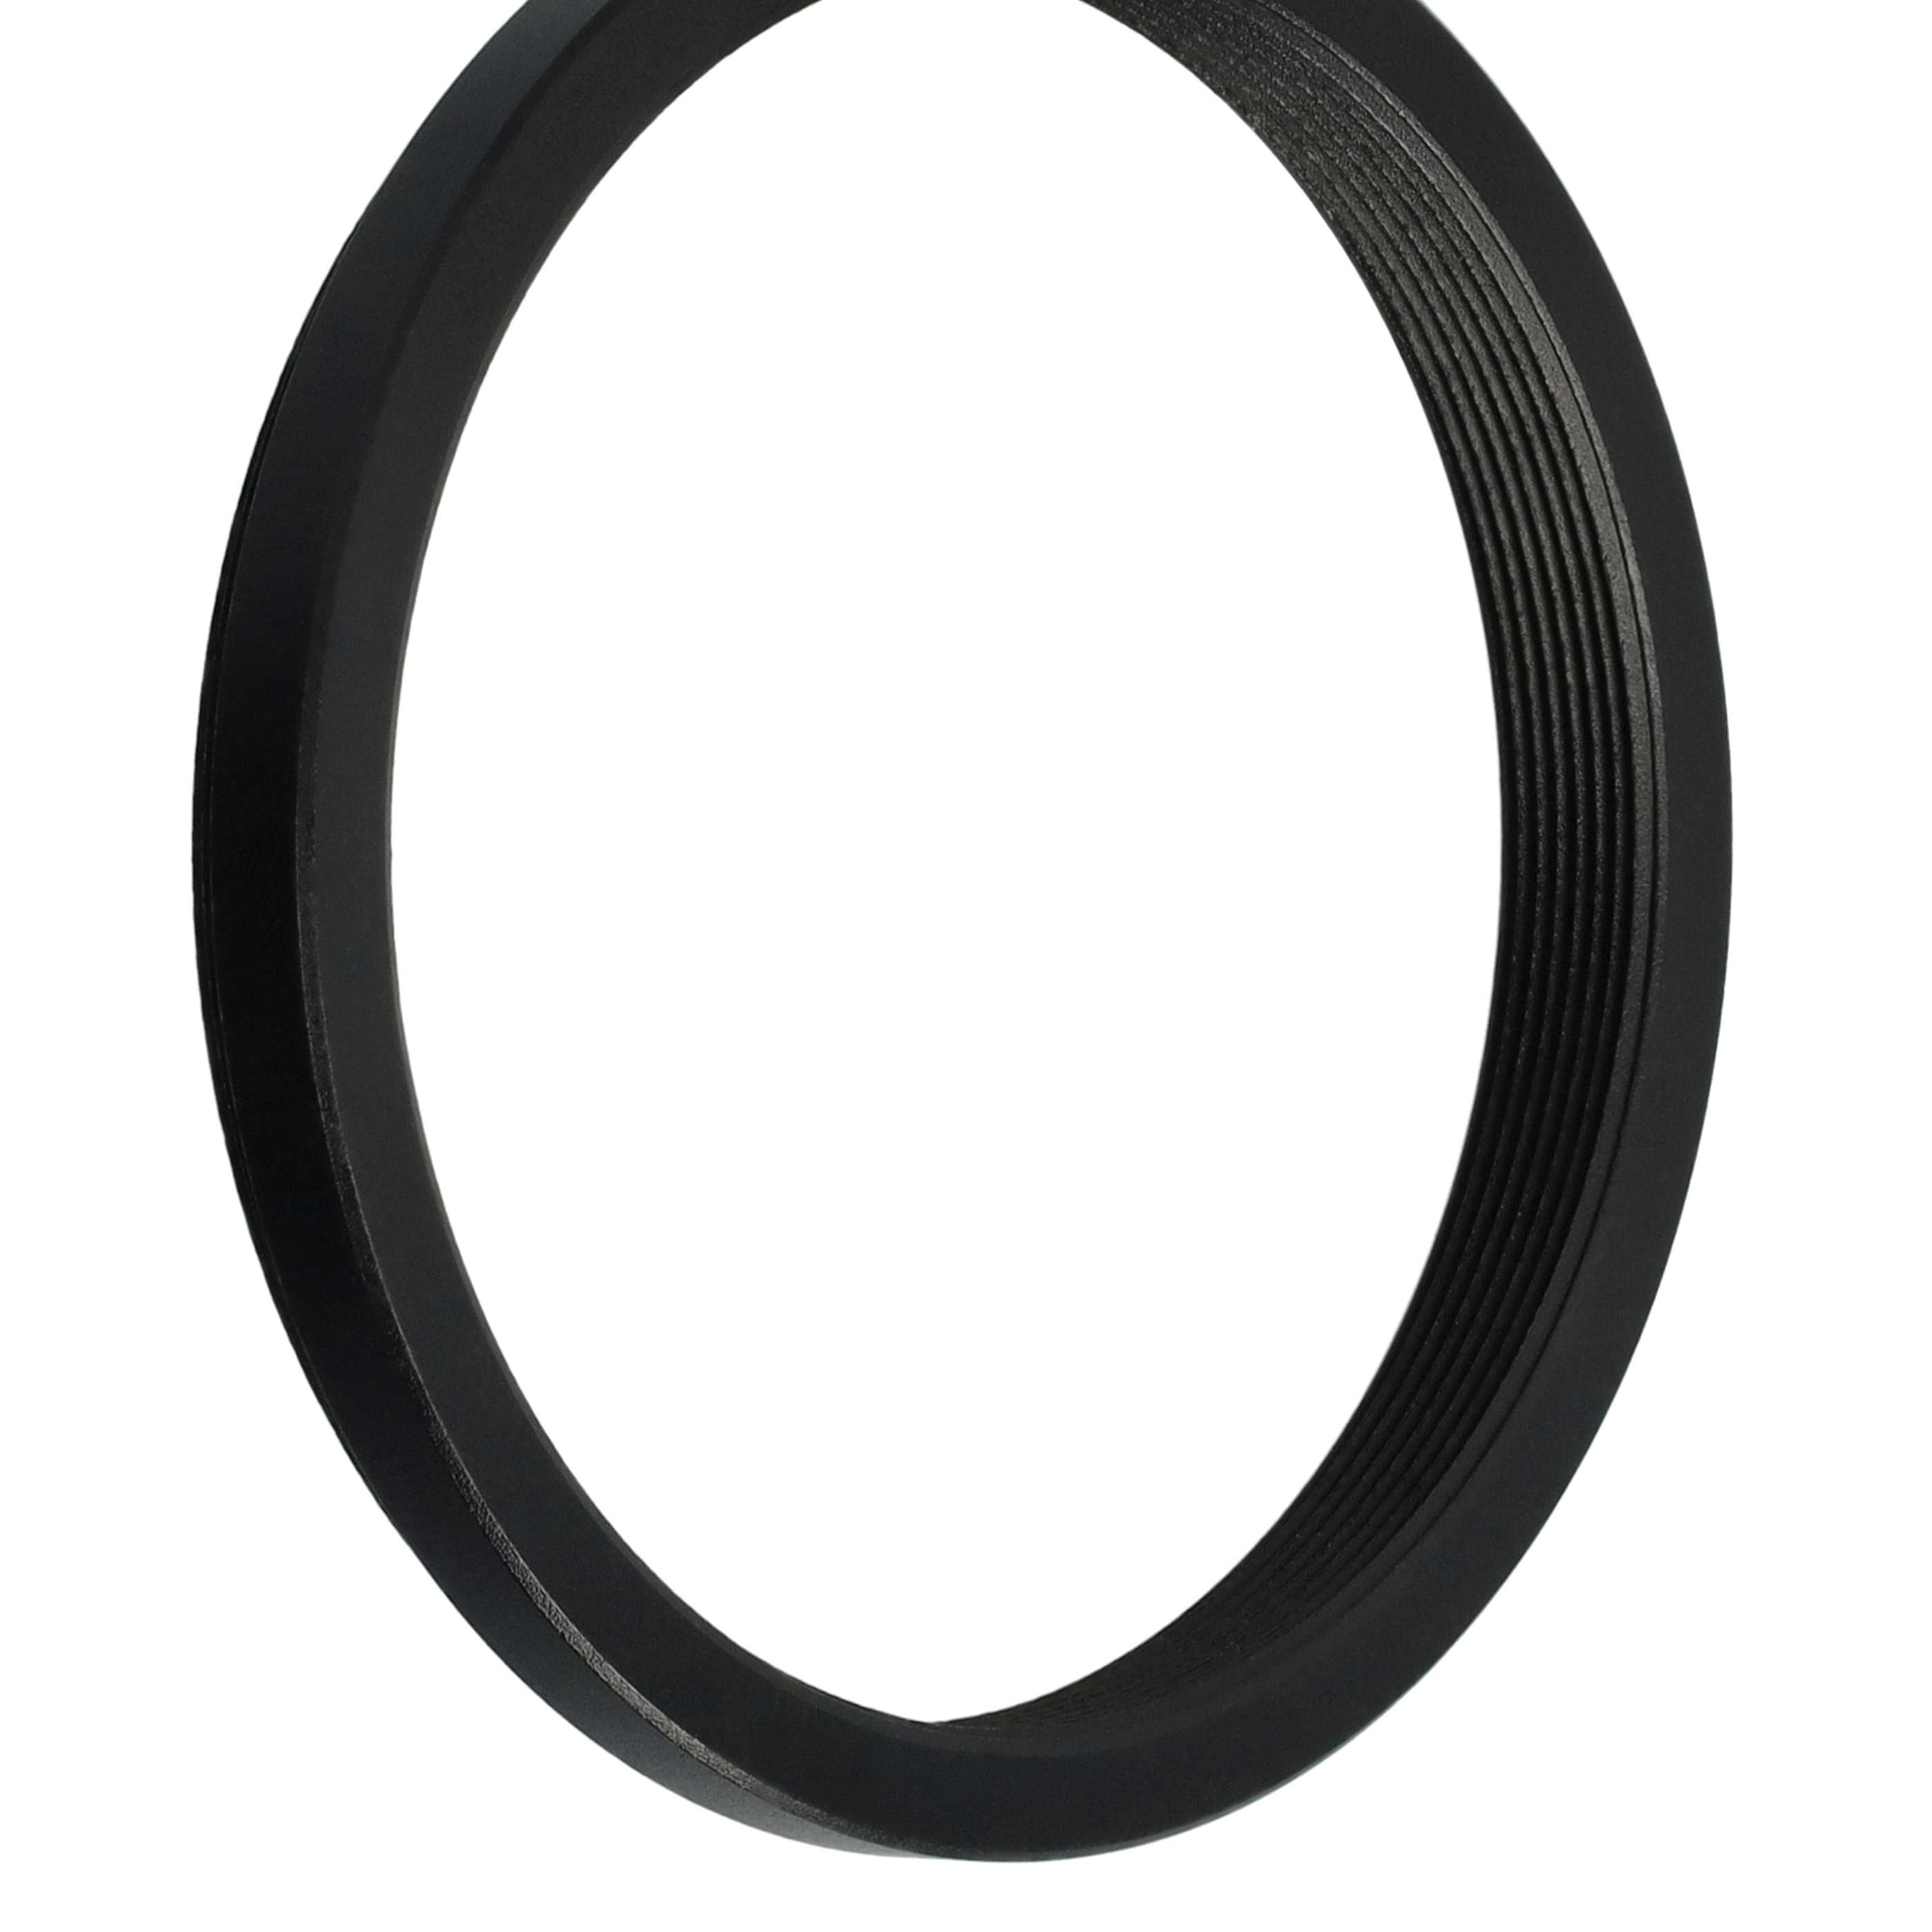 Redukcja filtrowa adapter Step-Down 52 mm - 48 mm pasująca do obiektywu - metal, czarny